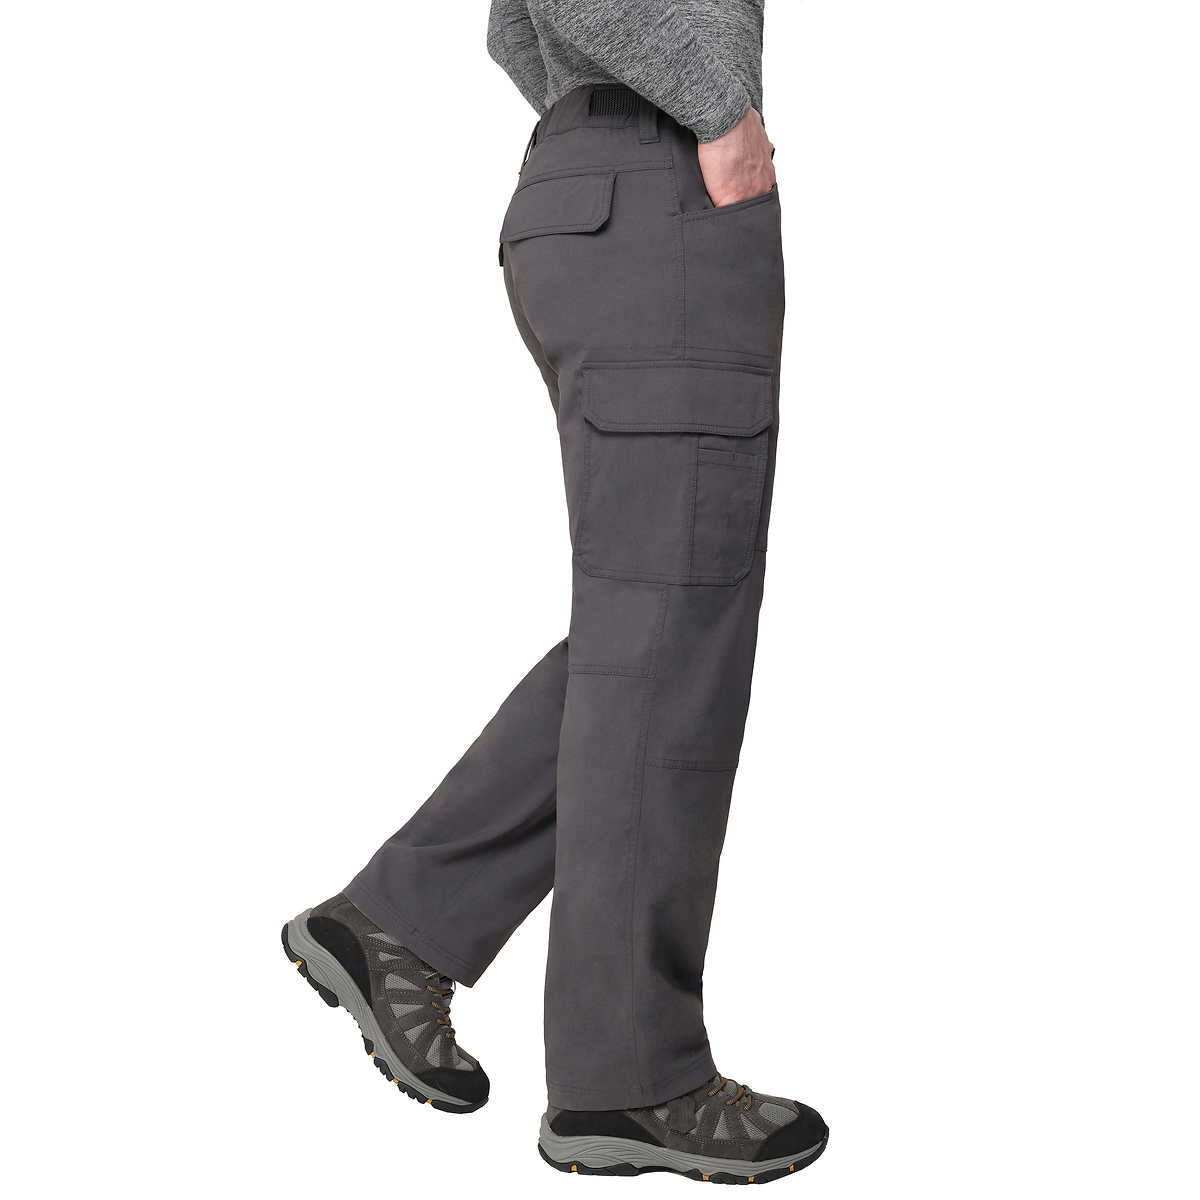 the-bc-clothing-pantalon-doublé-homme-men-lined-pants-5